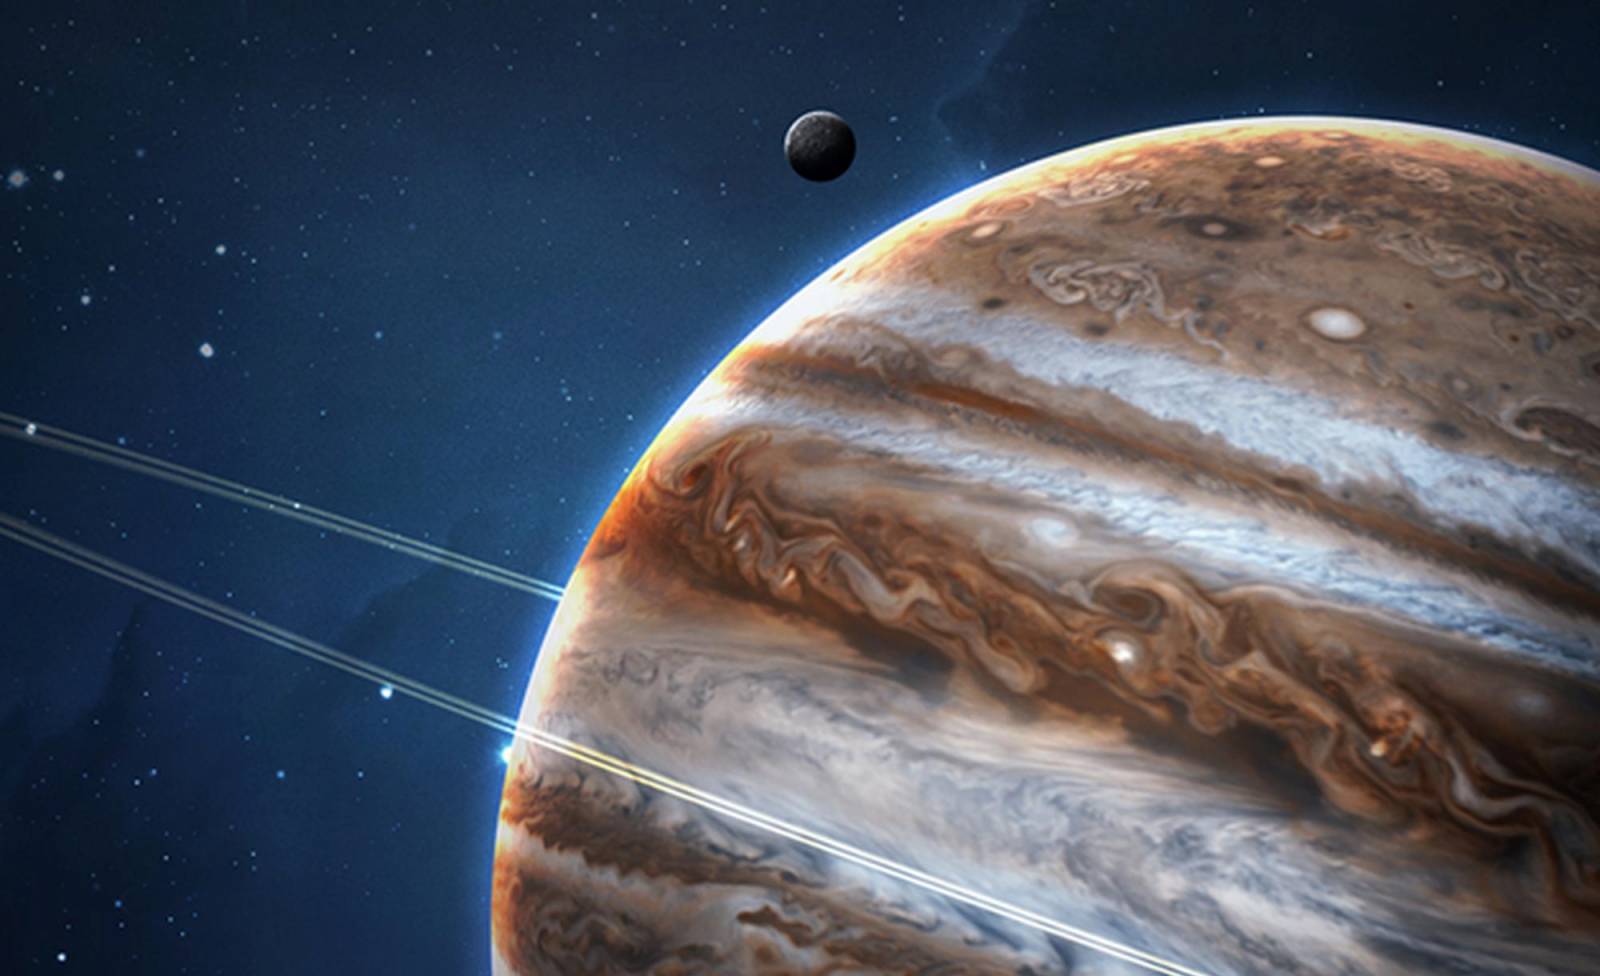 Planeetta Jupiter. USKOMATTOMISTA NASAssa USKEMMAN löydön jälkeen